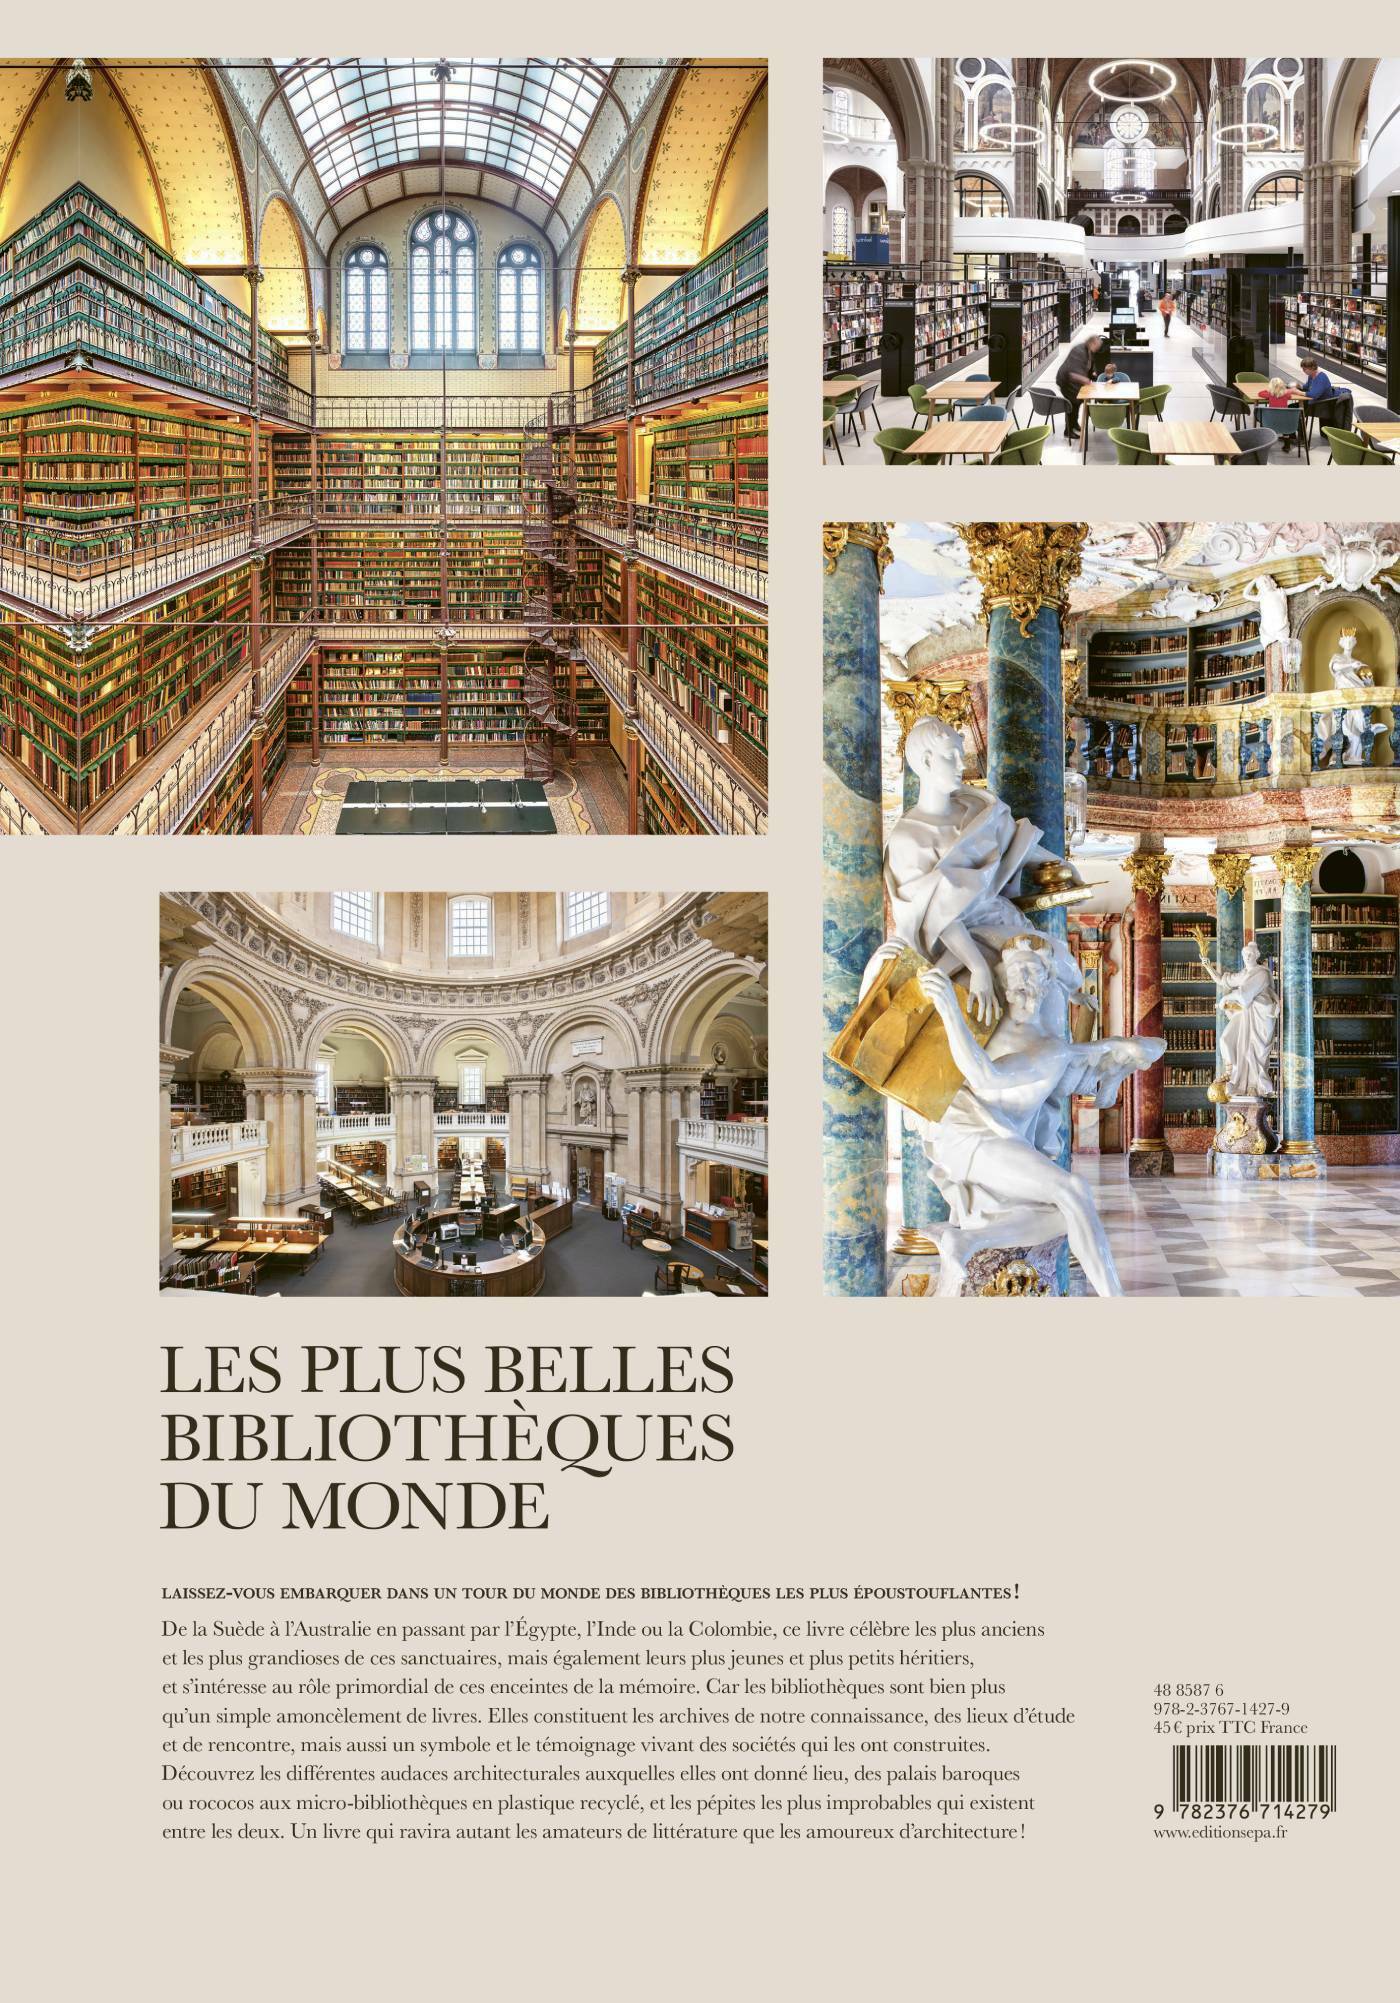 Les Plus Belles Bibliothèques Du Monde, bibliothèques